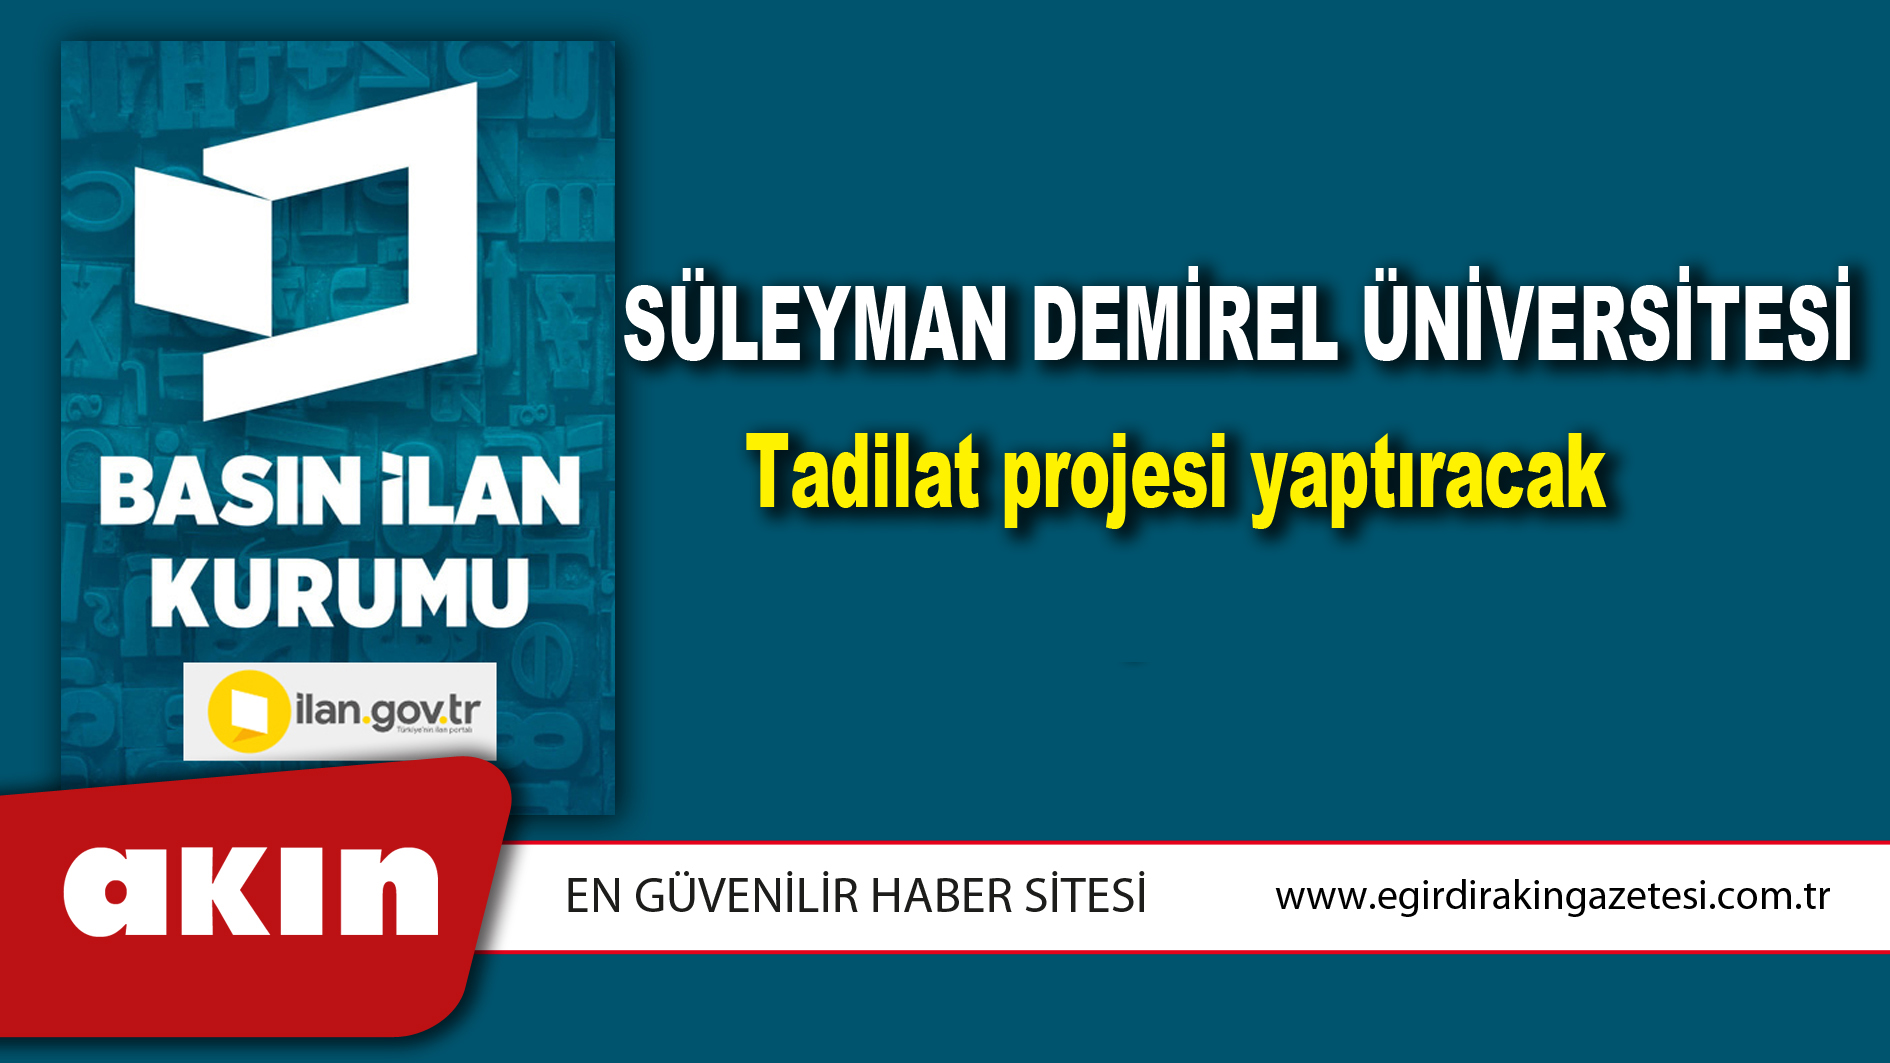 Süleyman Demirel Üniversitesi Tadilat projesi yaptıracak